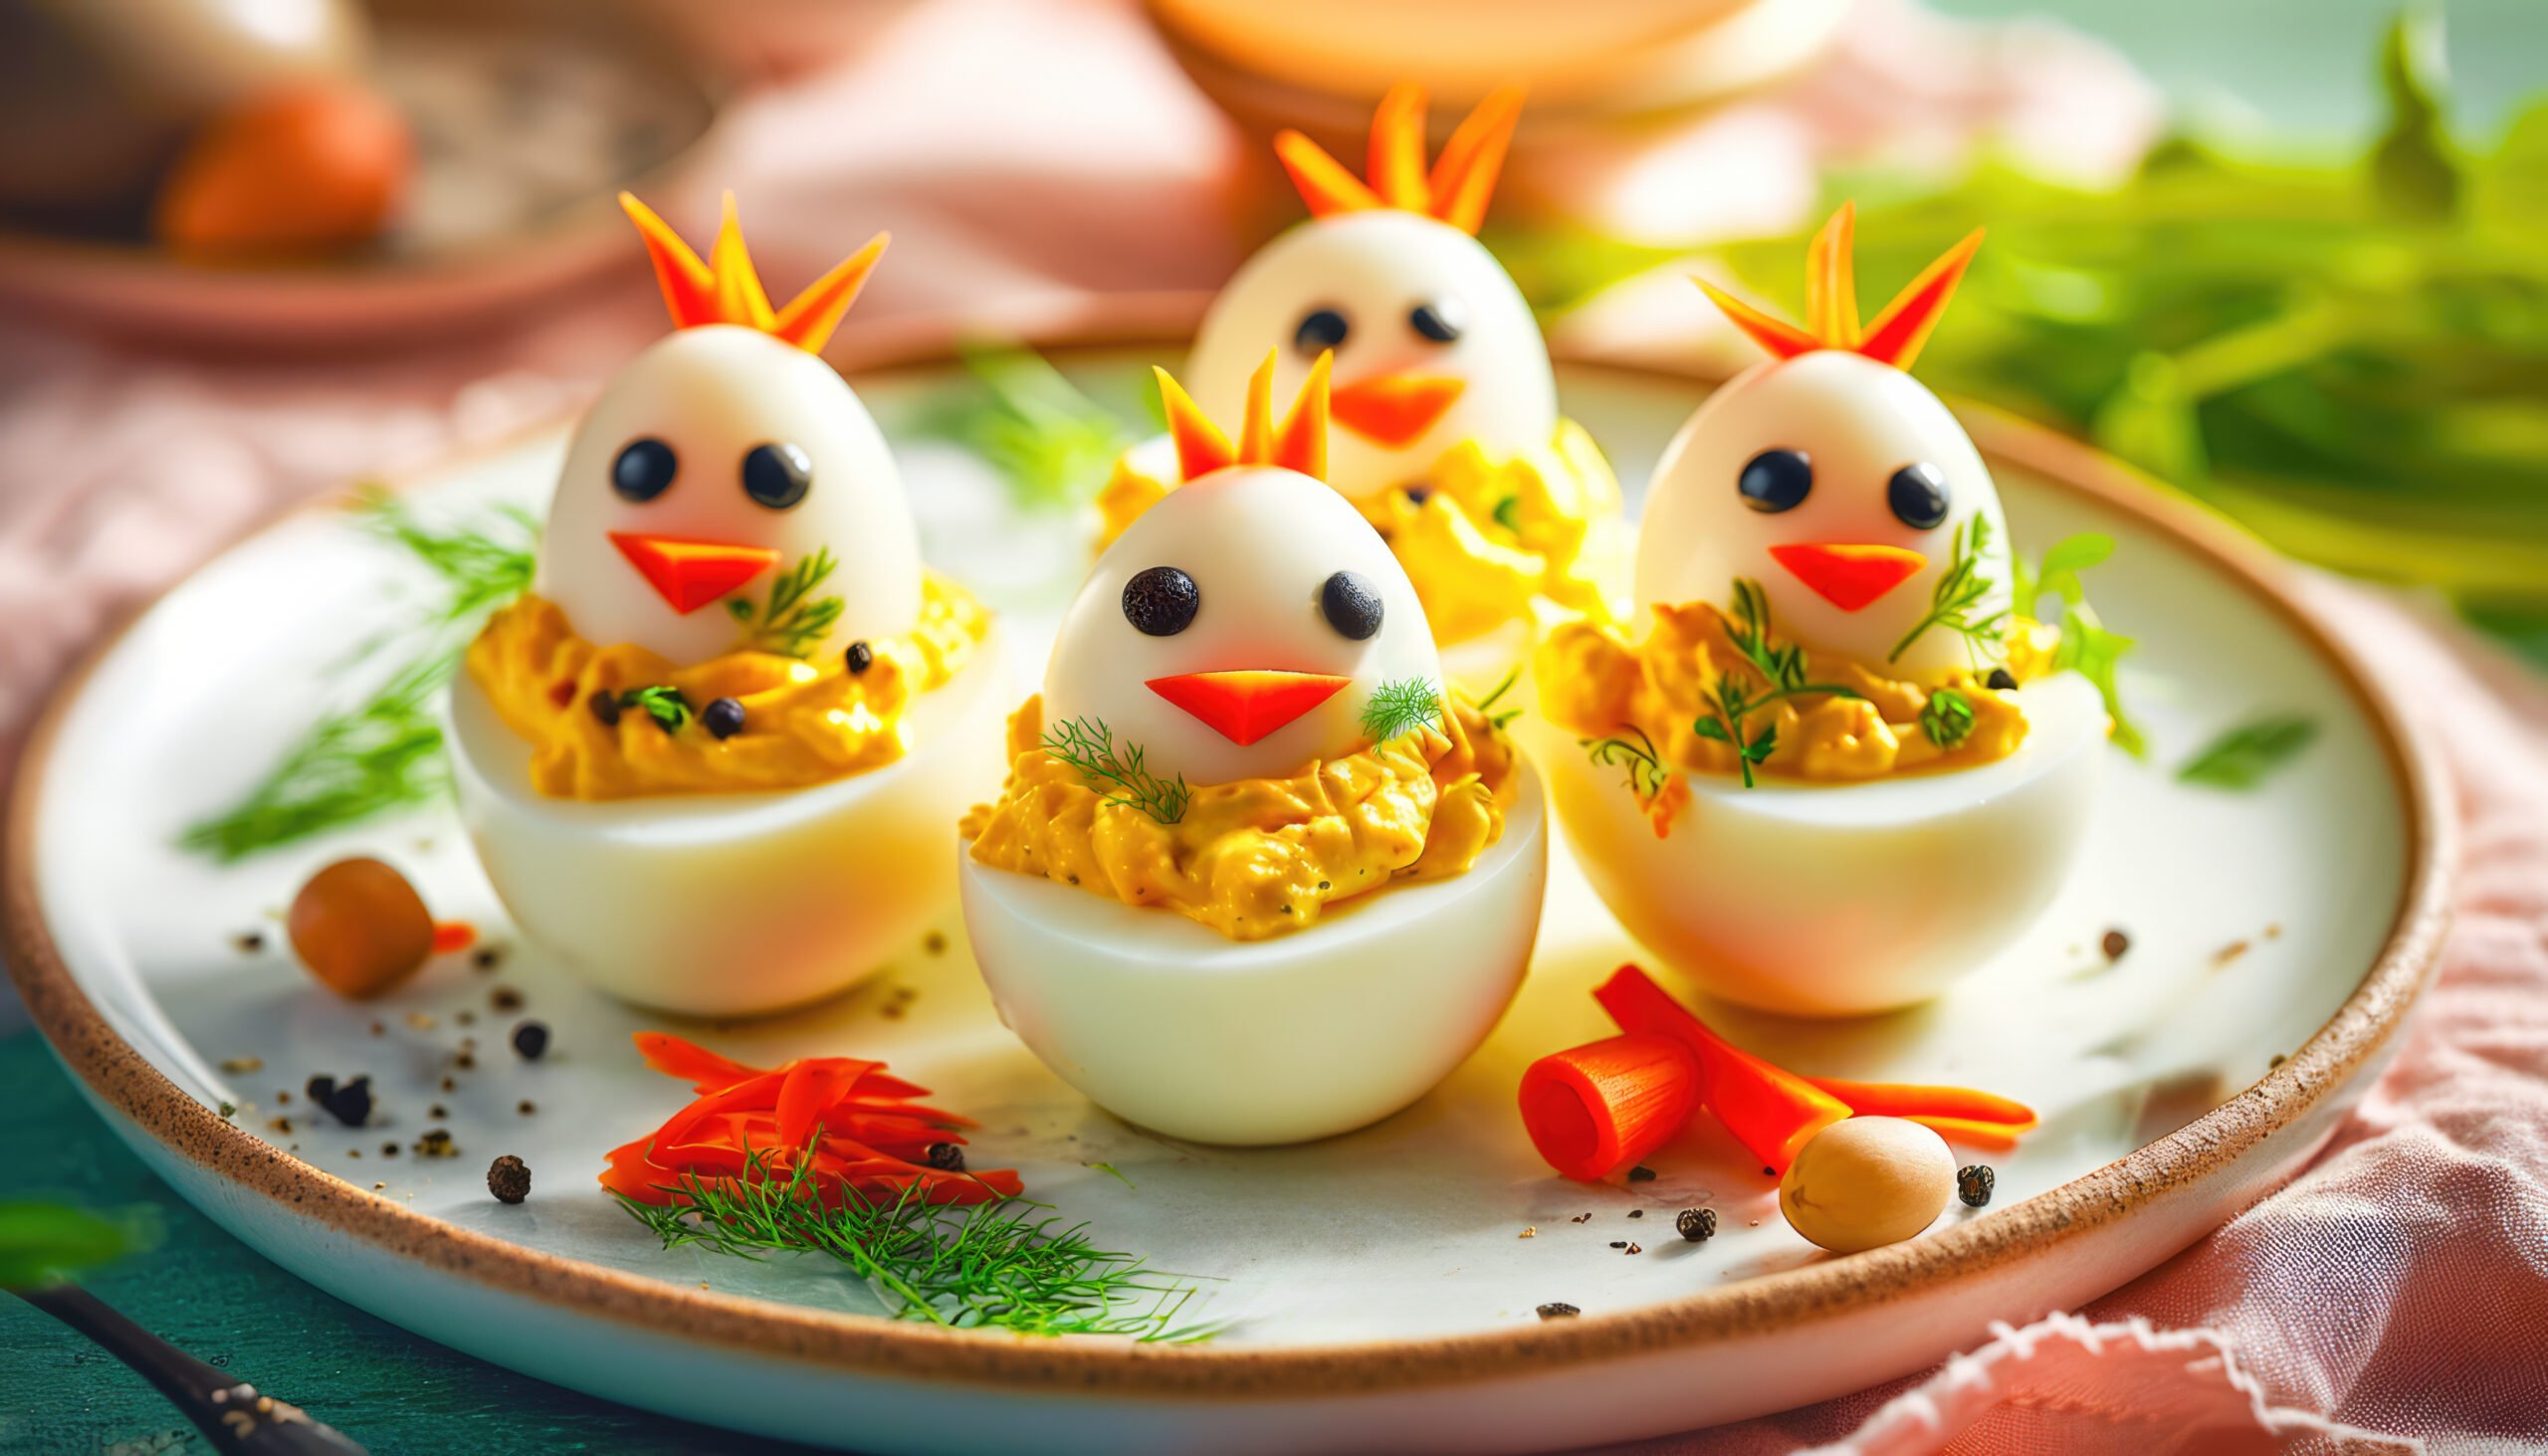 Antipasto di Pasqua con le uova: tante idee semplici e veloci da realizzare